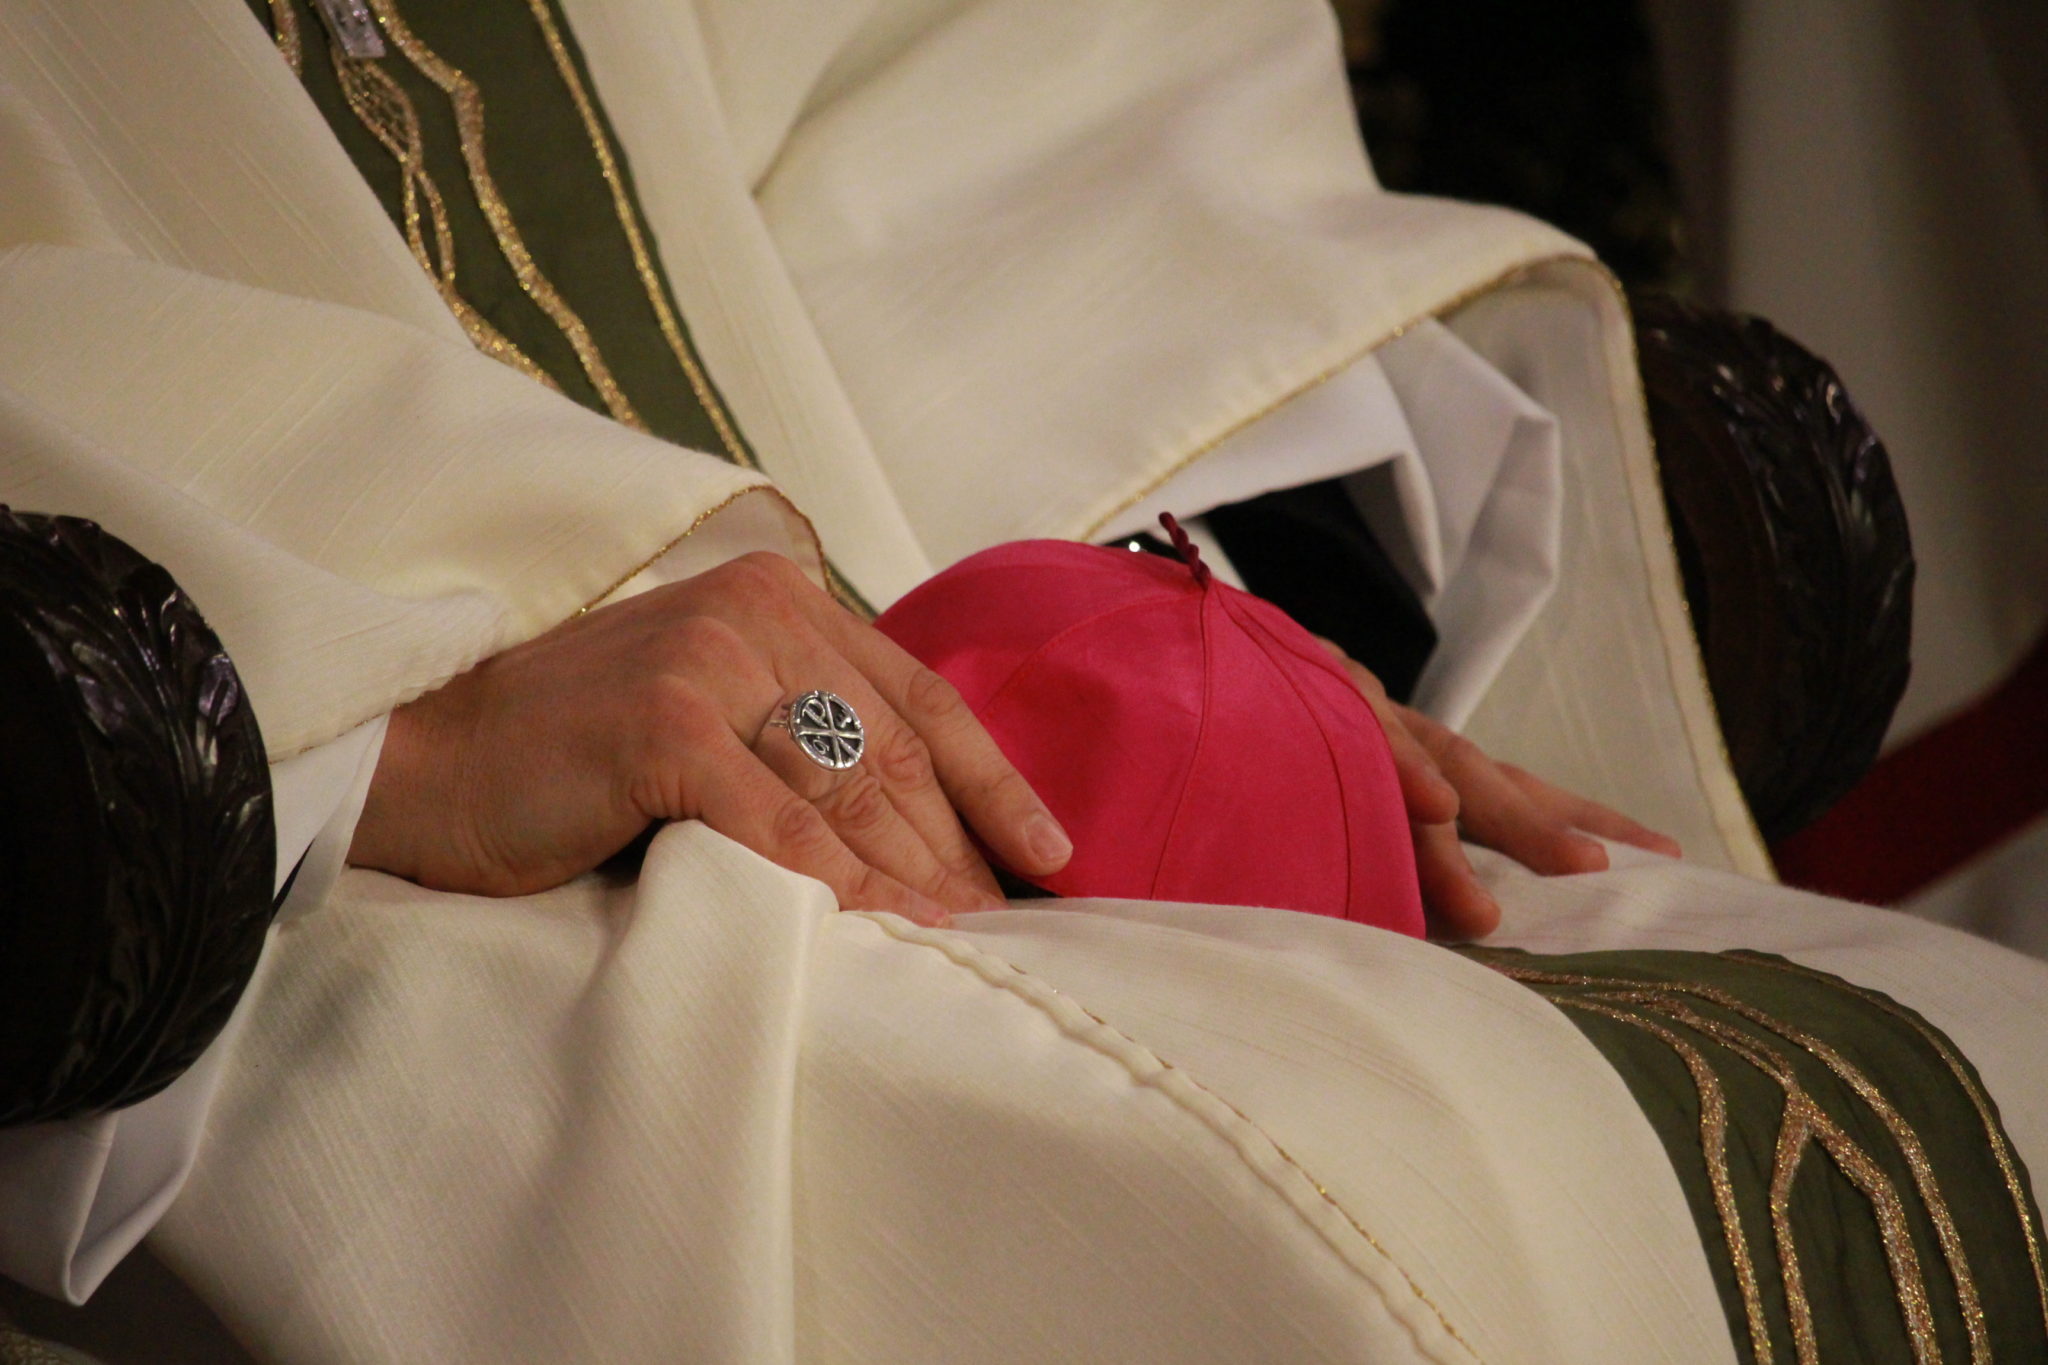 l’évêque vendra des biens de l’église pour indemniser les victimes pédophiles